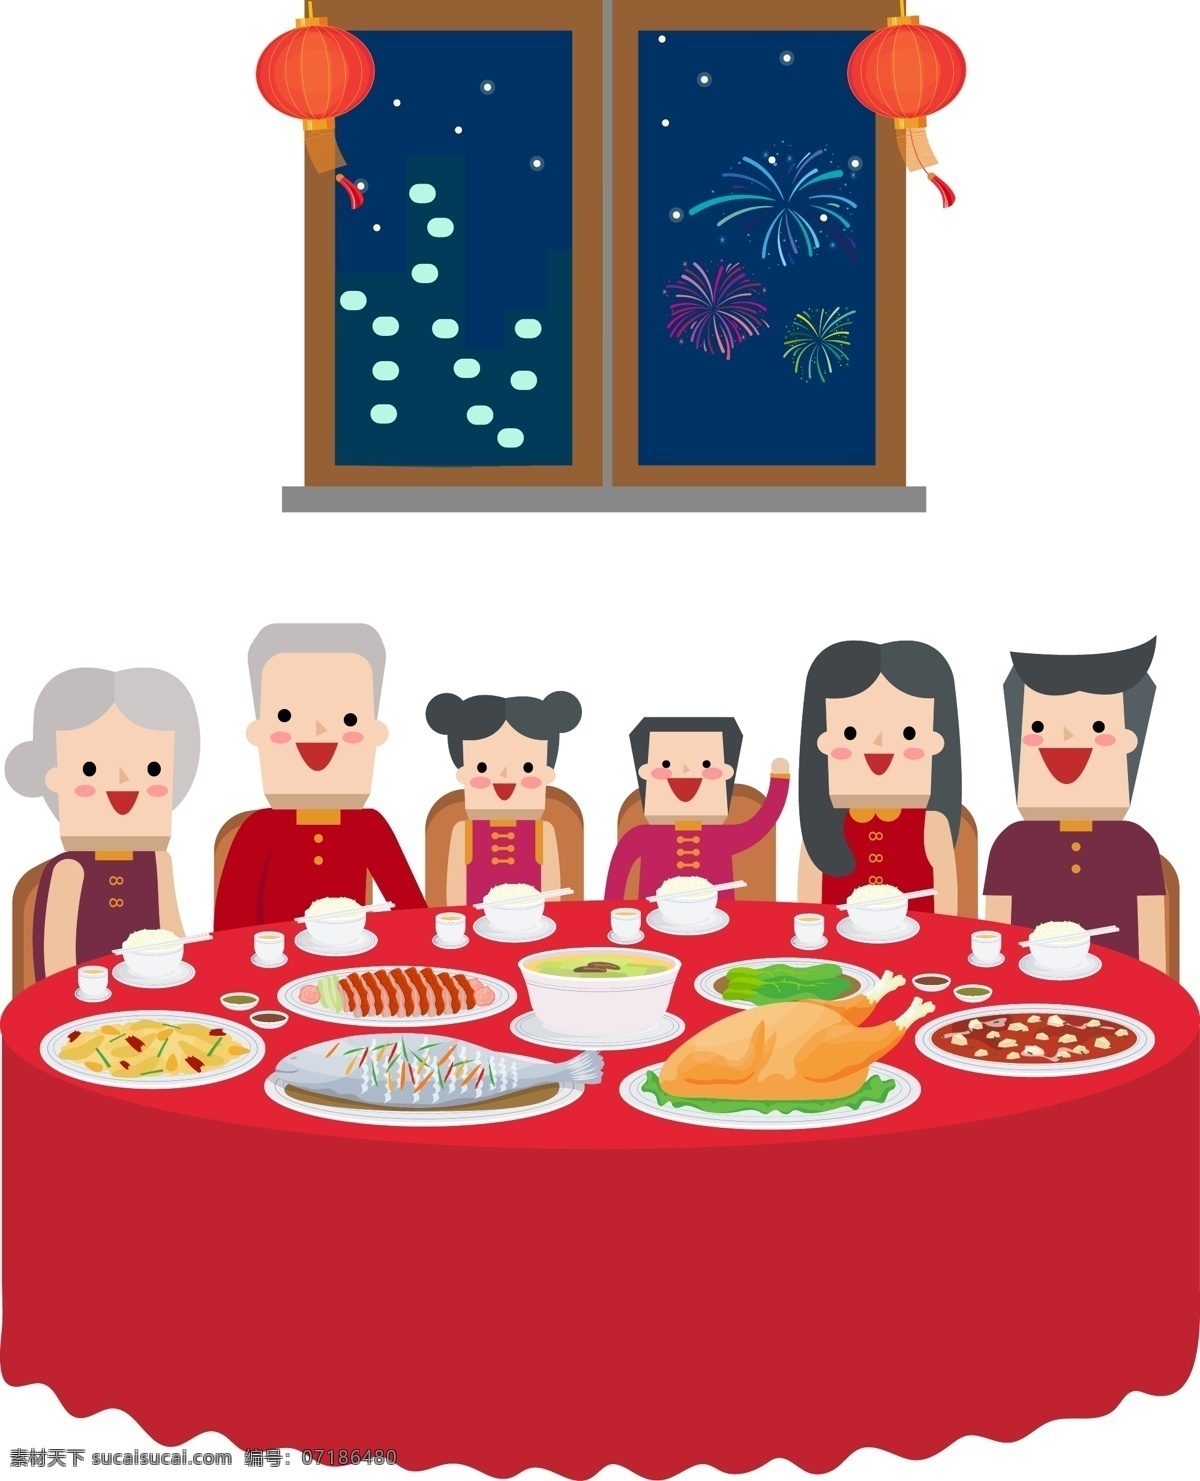 春节 阖家团圆 场景 矢量图 团圆 年夜饭 一家人 过年